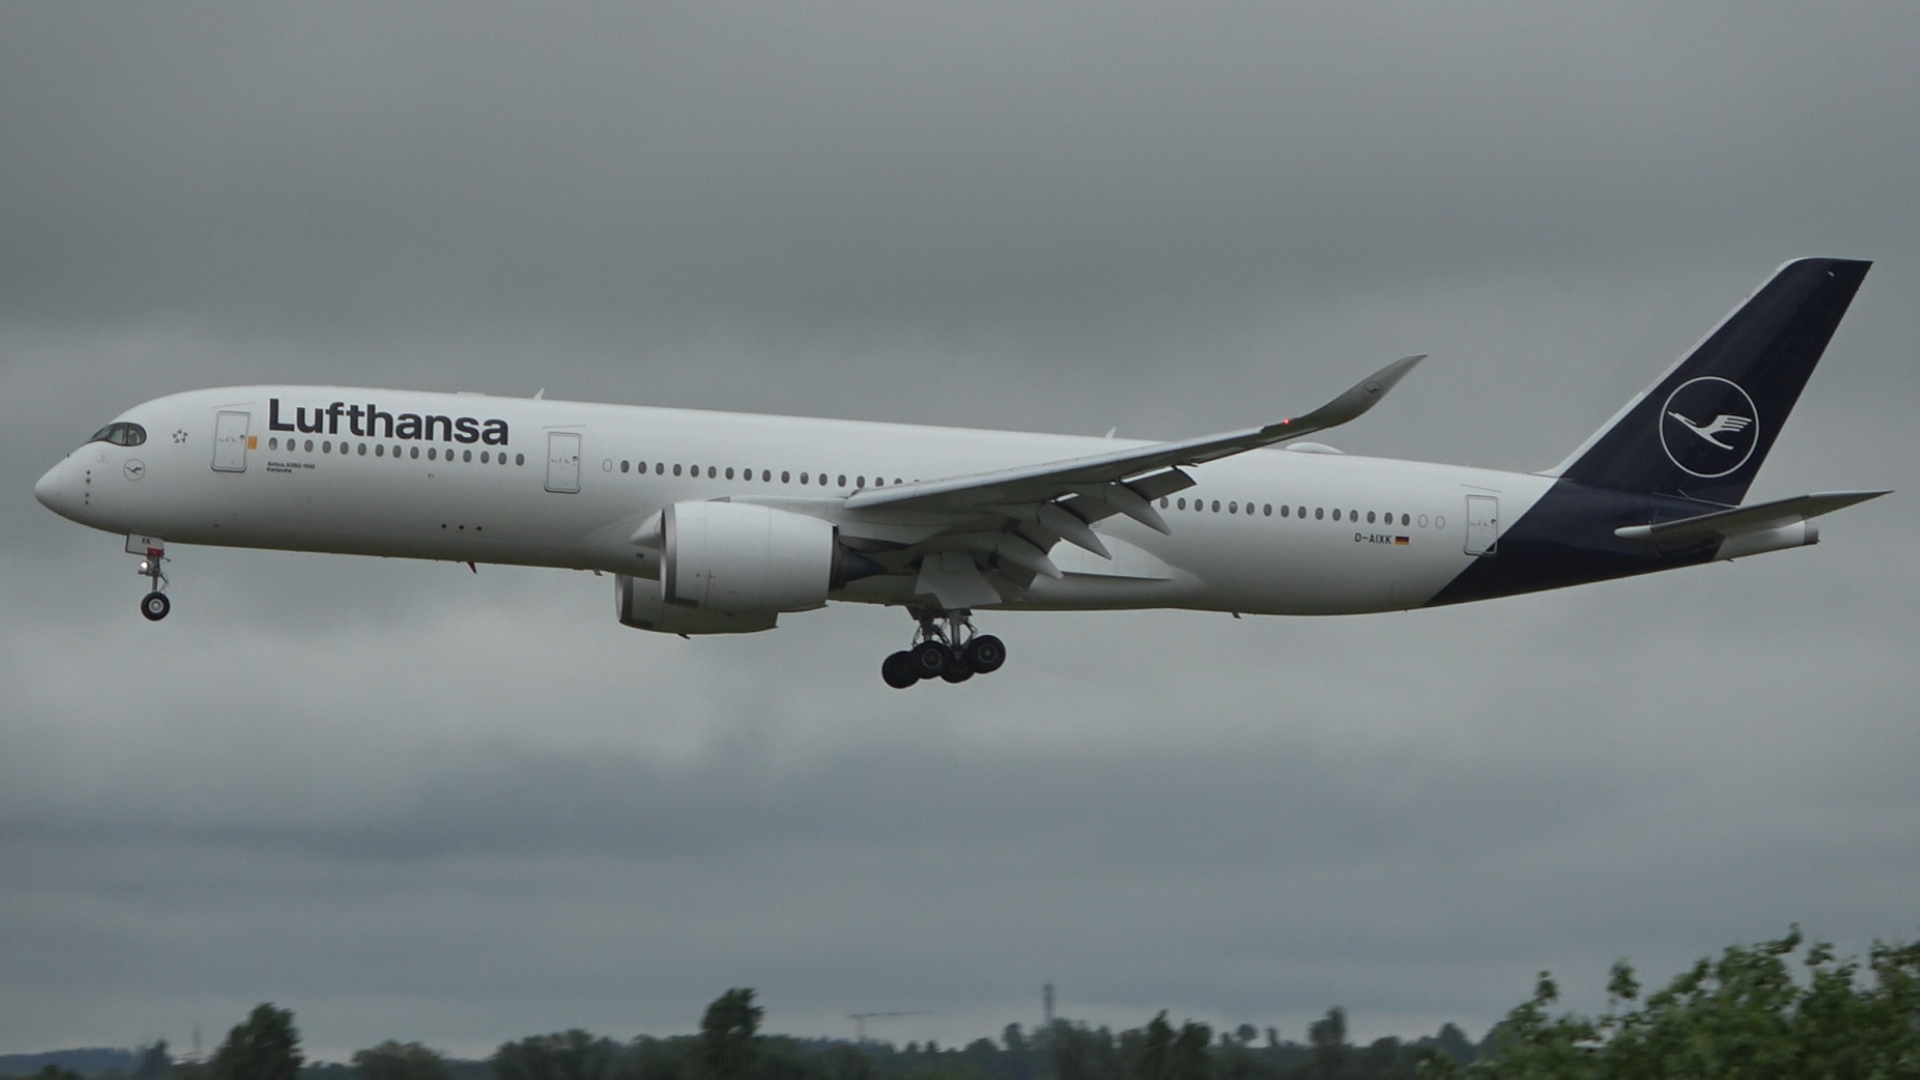 Lufthansa ✈️ (LH) - Gepäckregeln und Fluginfos - Fluggesellschaft.de